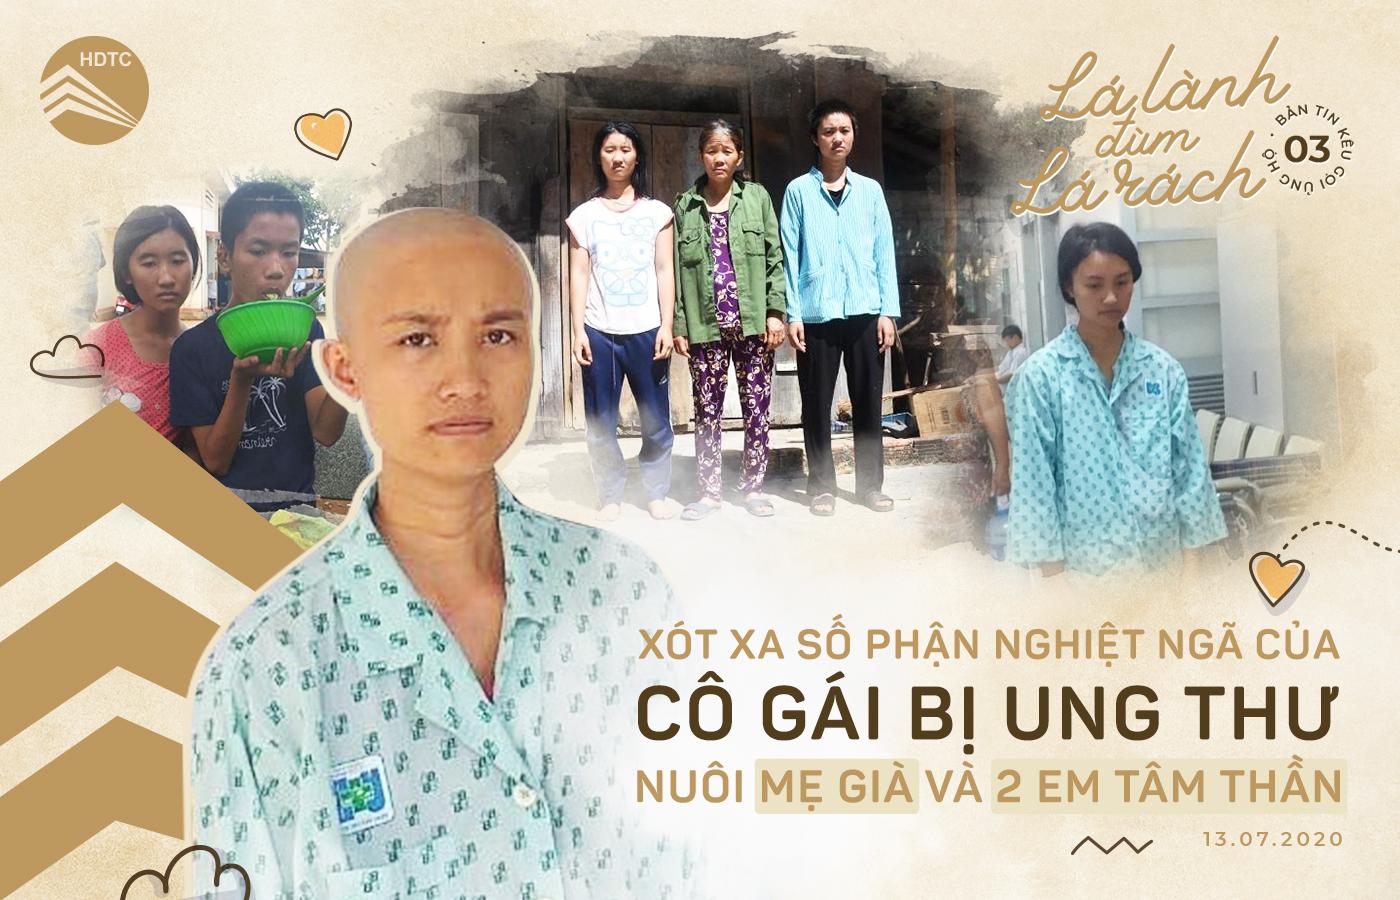 Lá lành đùm lá rách 03 - Chung tay hỗ trợ chi phí chữa bệnh cho bệnh nhân ung thư nghèo Phạm Thị Huyền tại Kon Tum